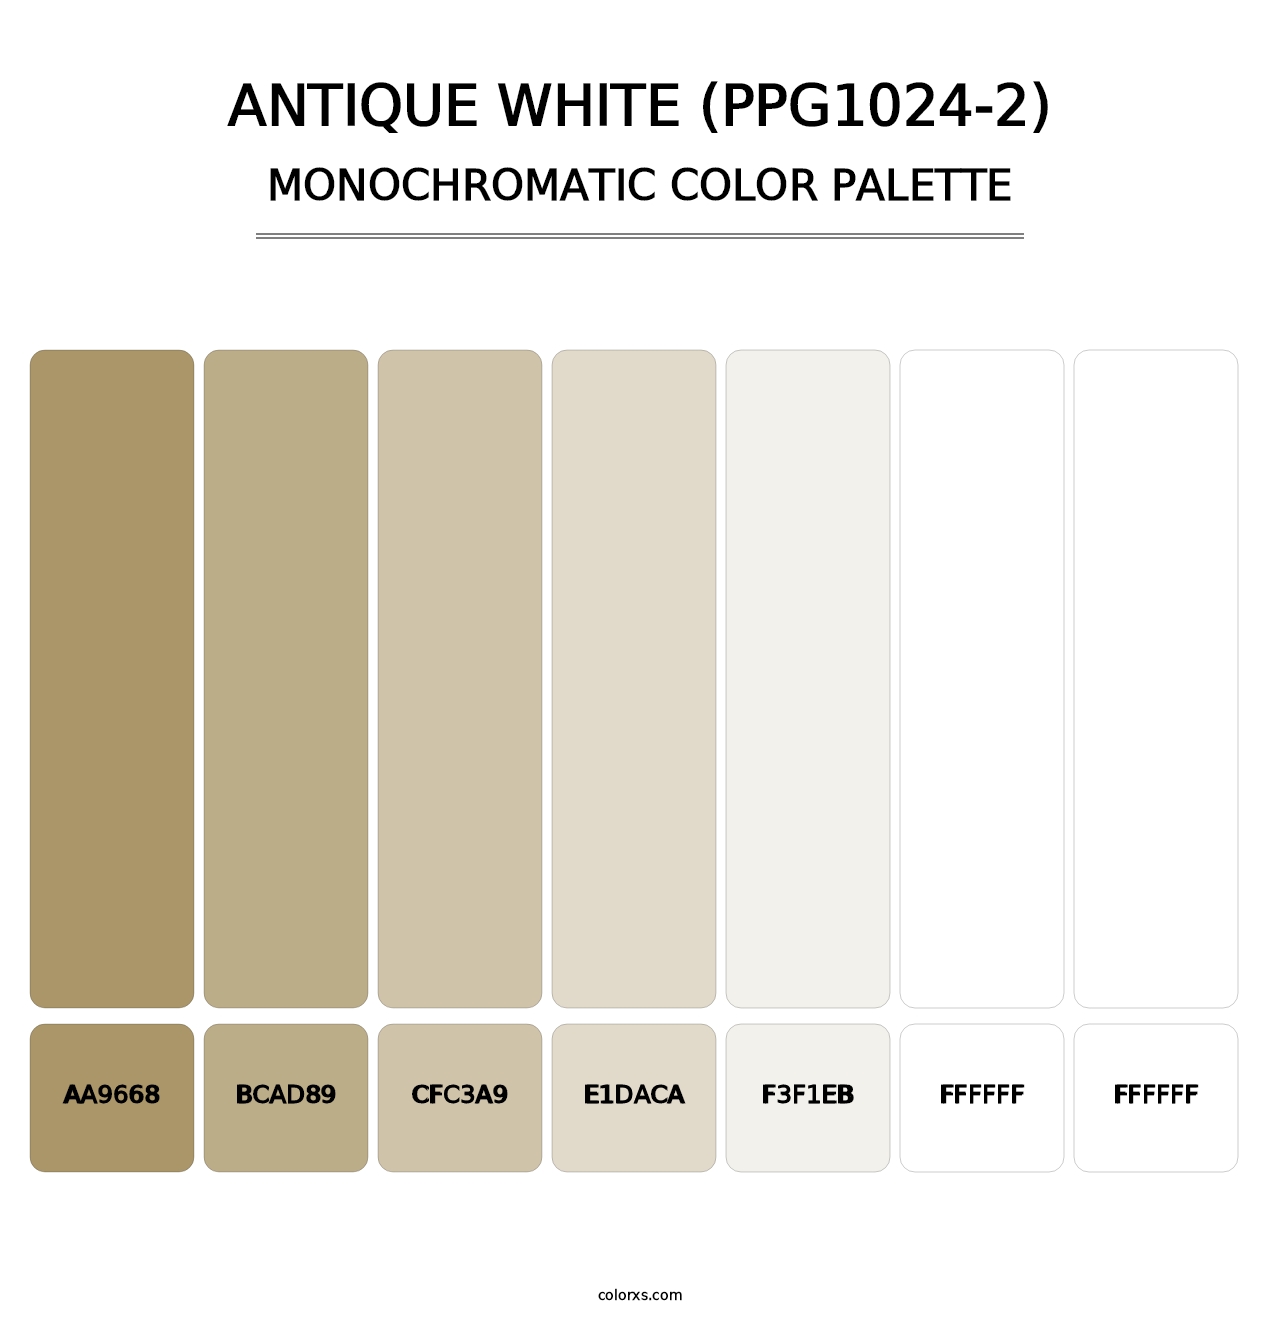 Antique White (PPG1024-2) - Monochromatic Color Palette